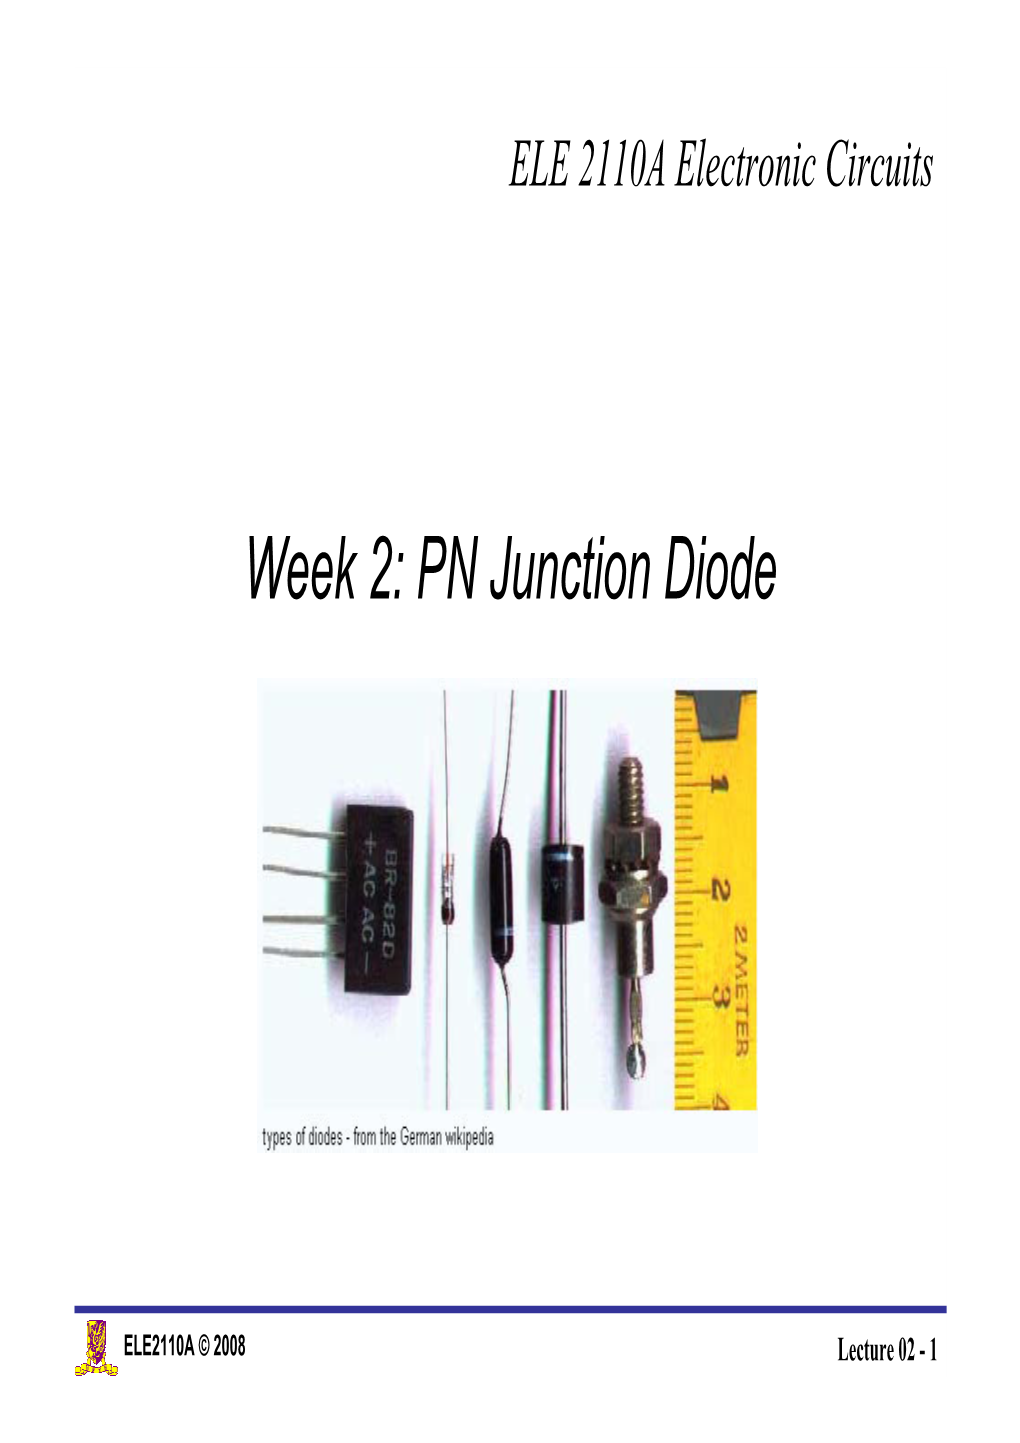 Week 2: PN Junction Diode